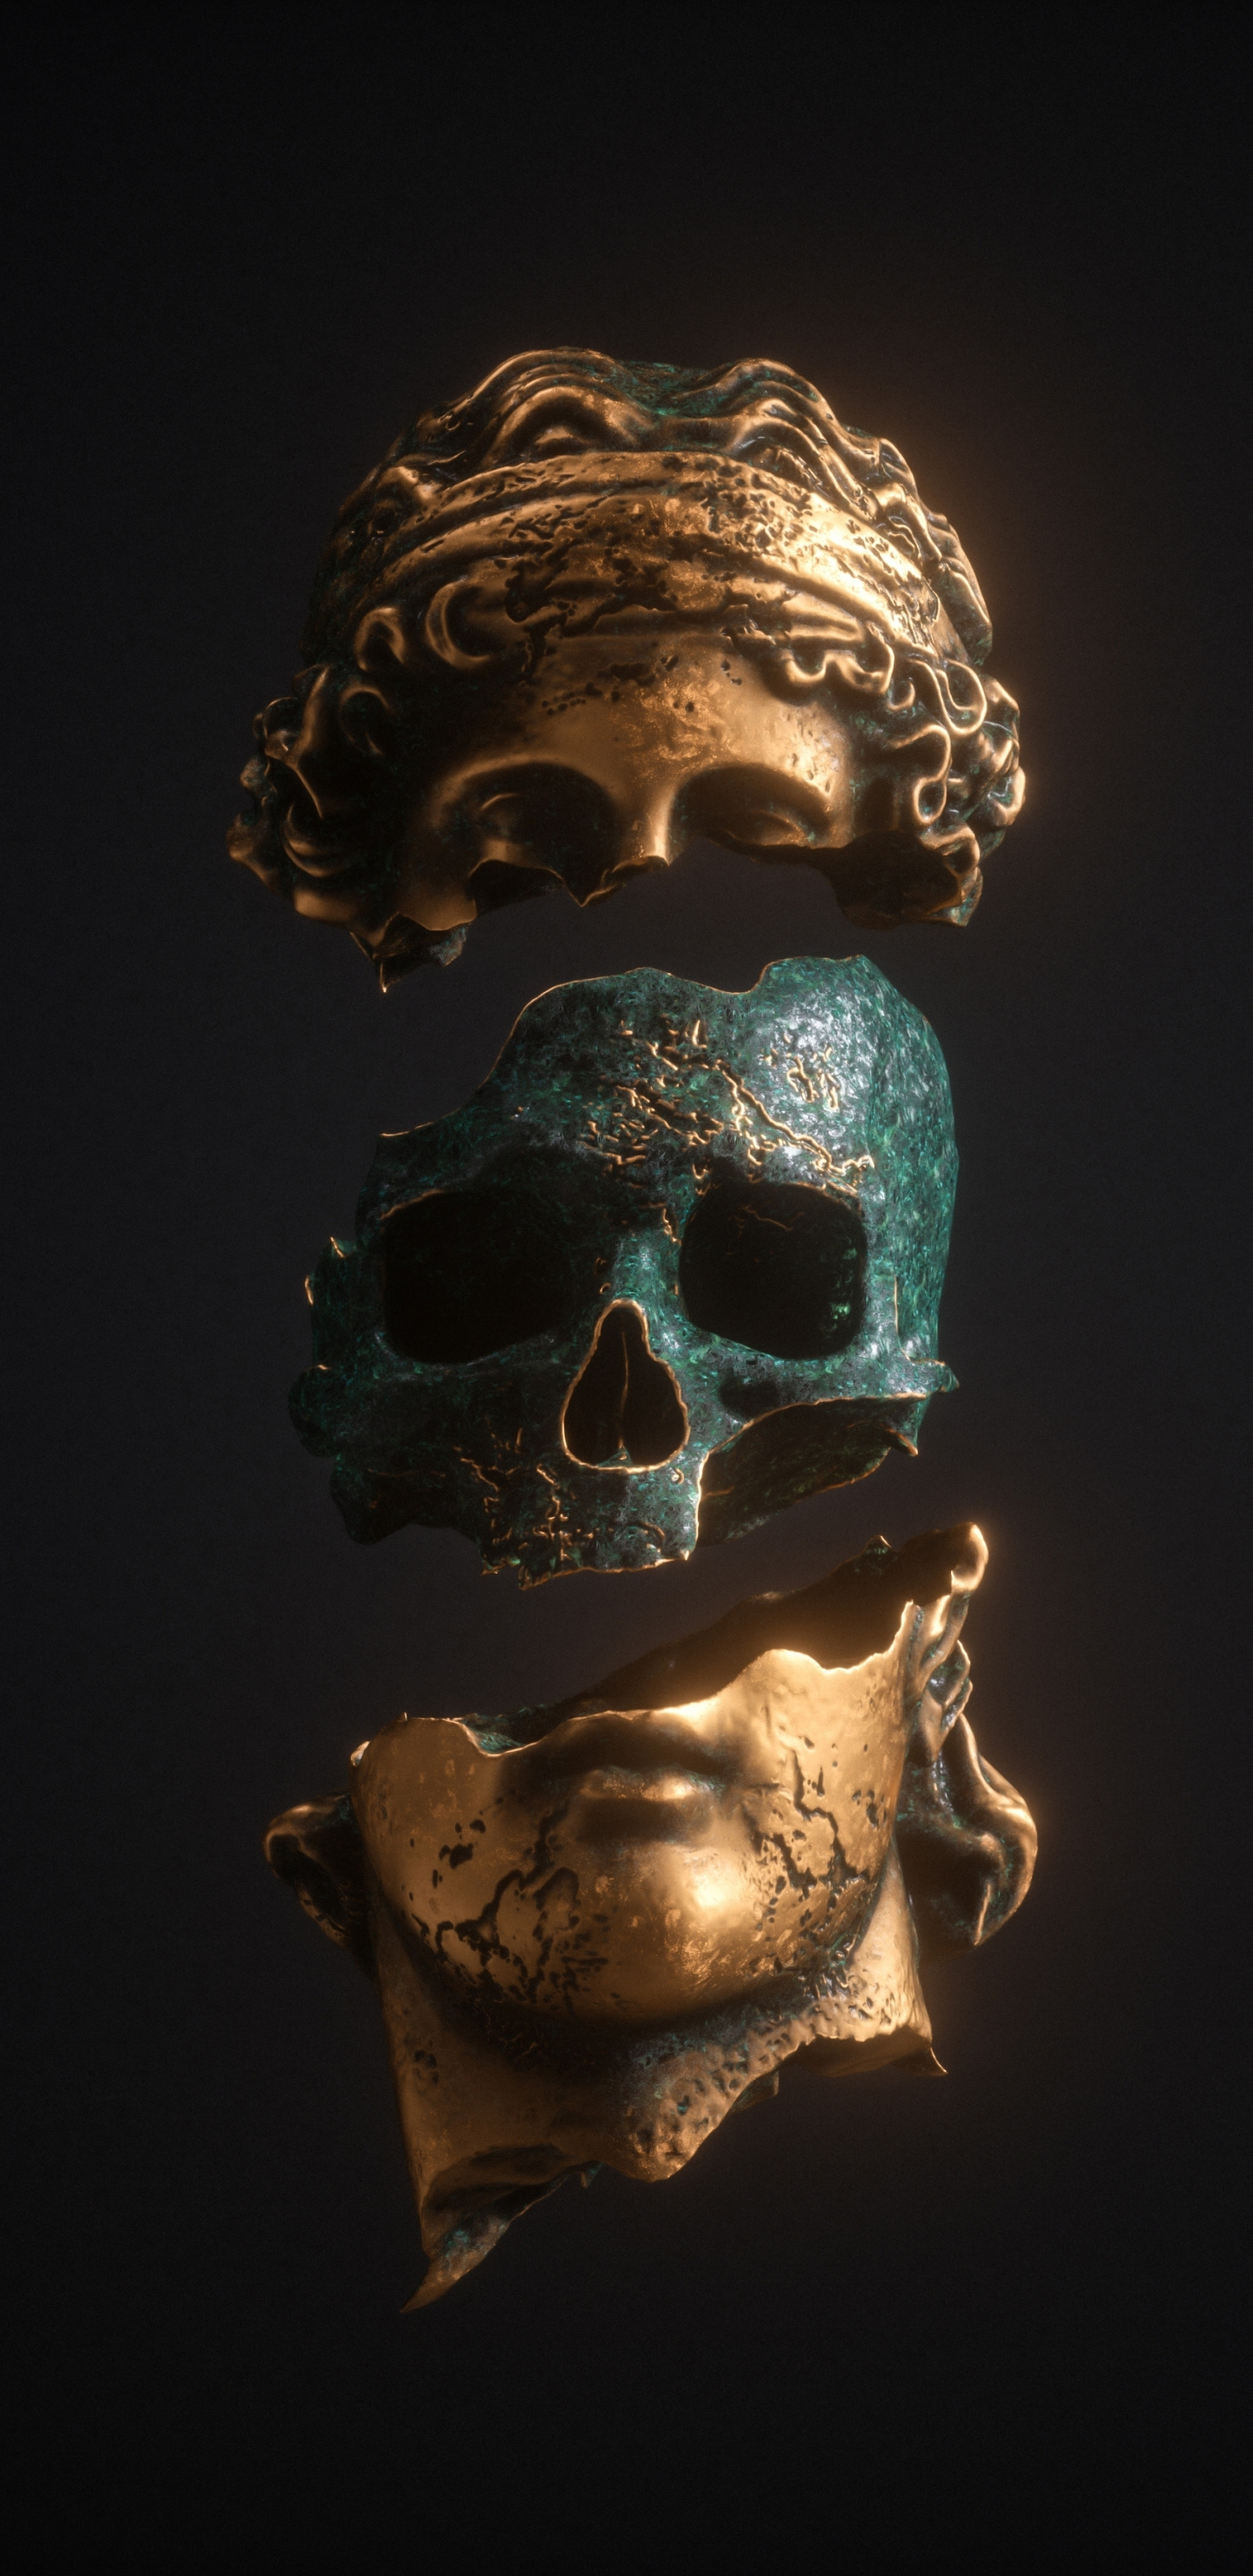 Download skull inside statue, art 1440x2960 wallpaper, samsung galaxy